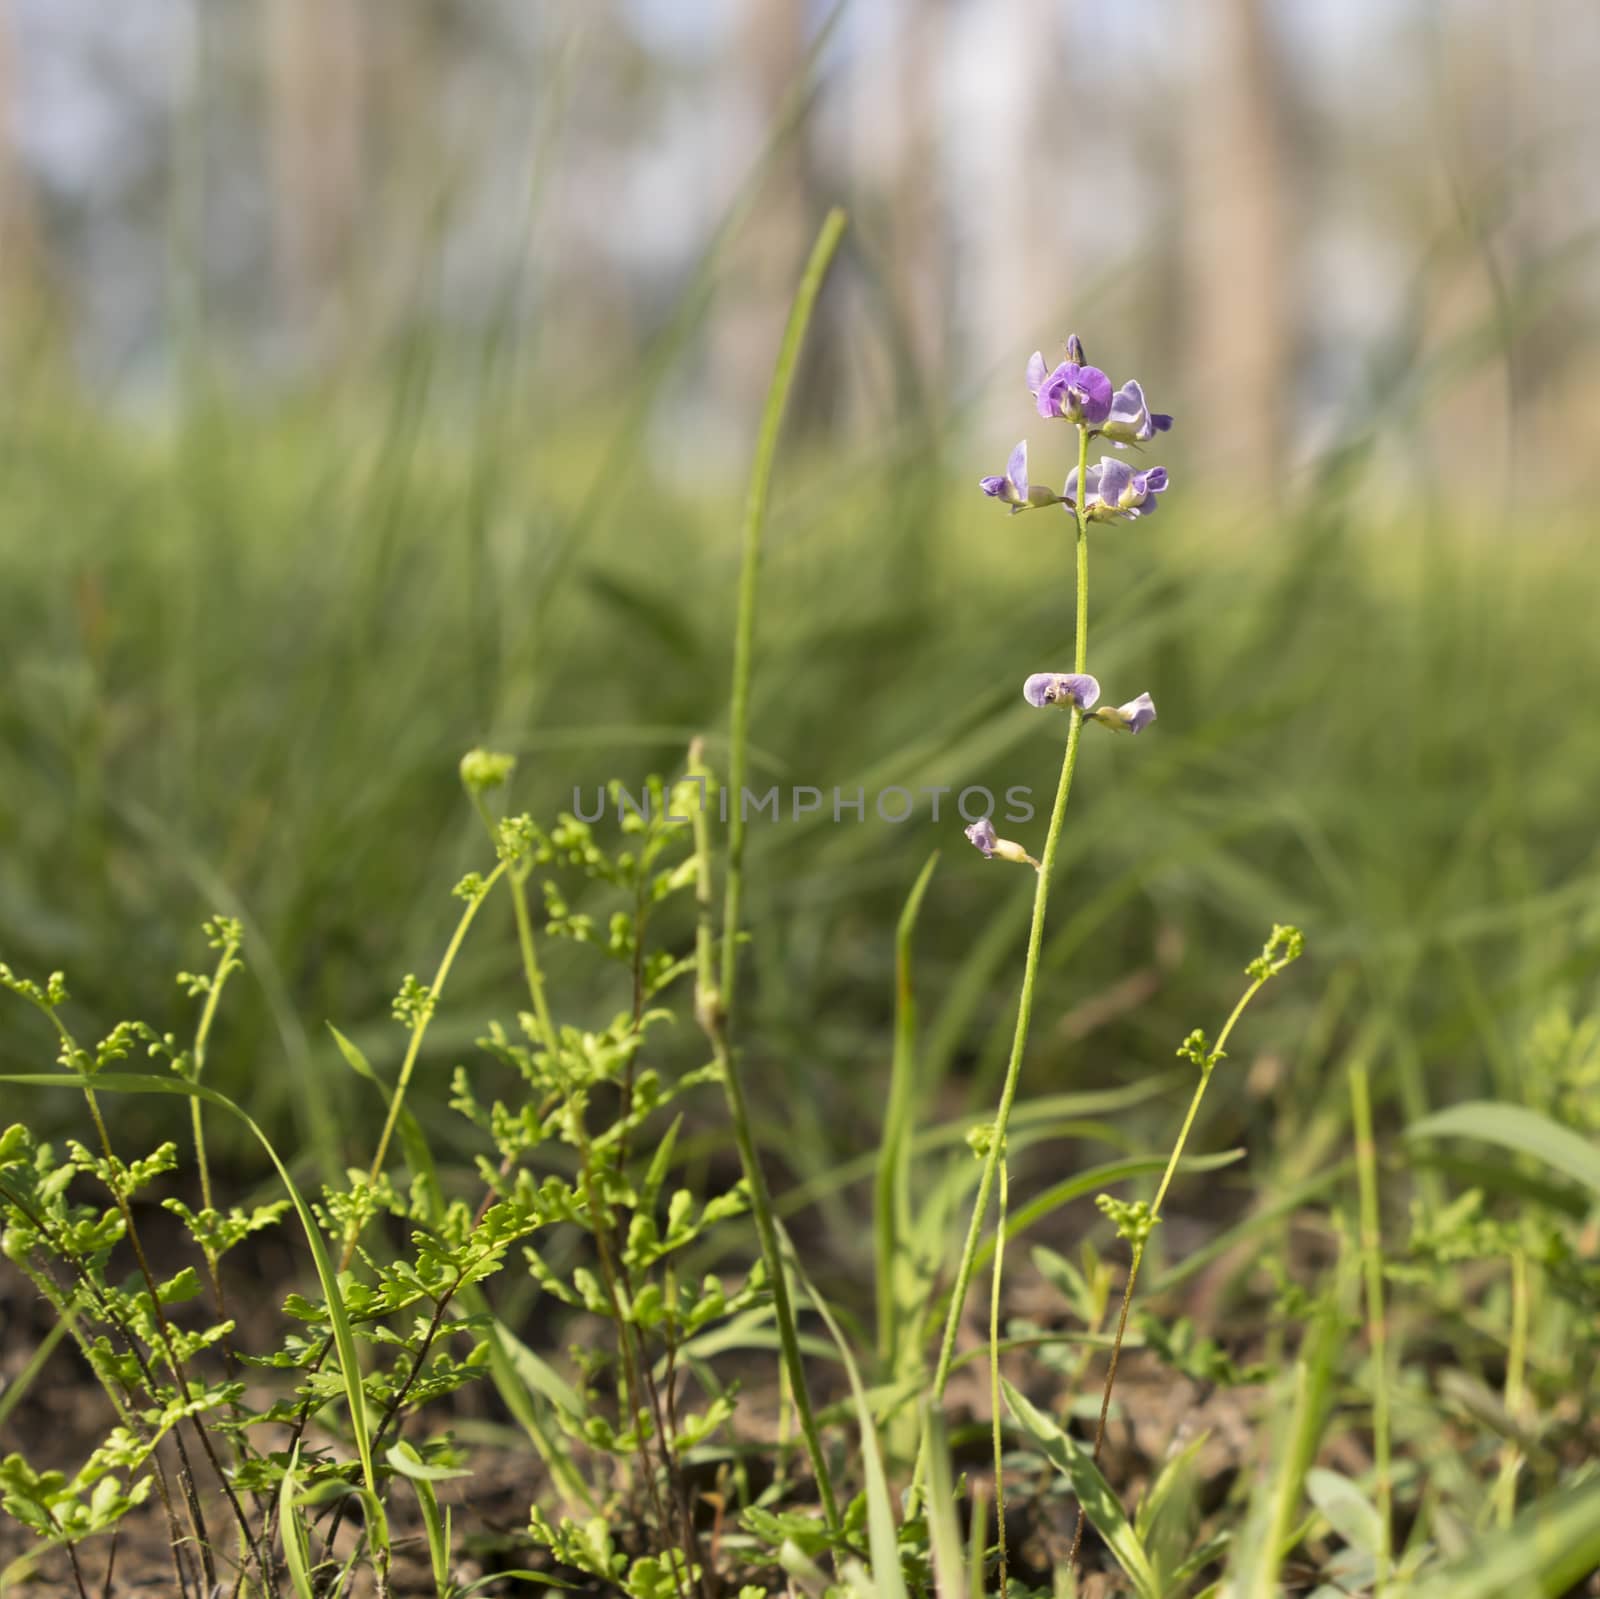 Australian Purple Wildflower Glycine in Eucalypt Grassland by sherj